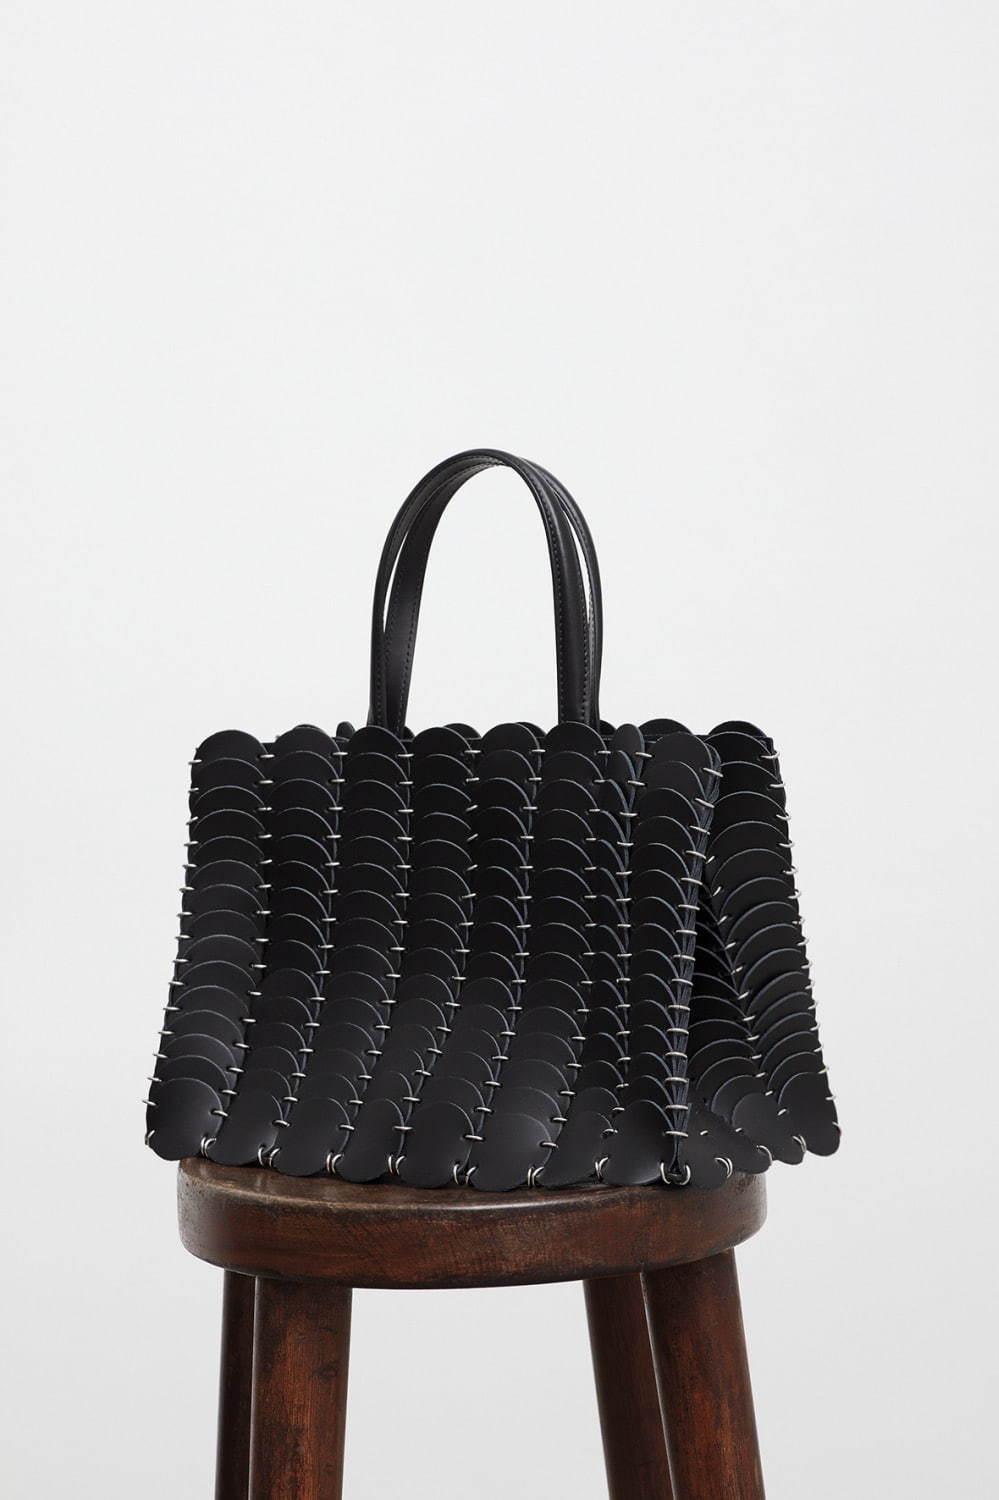 パコ ラバンヌの新作バッグ「パコイオ」レザーの円形パーツから構築 コピー